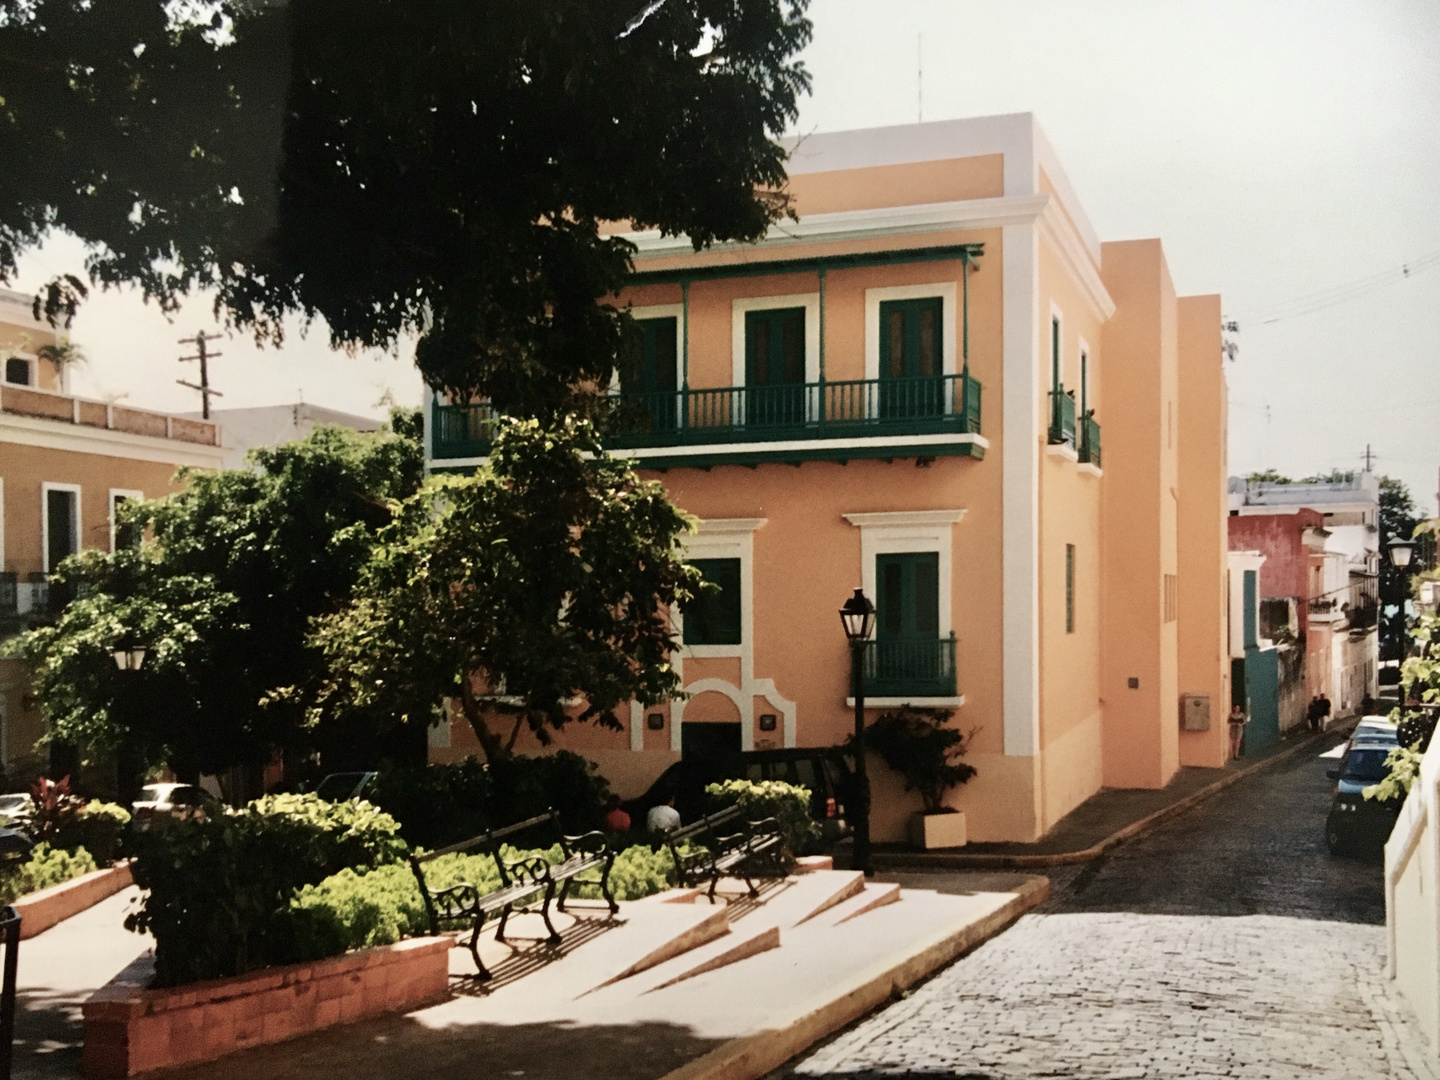 Puerto Rico (1997), Puerta de Tierra